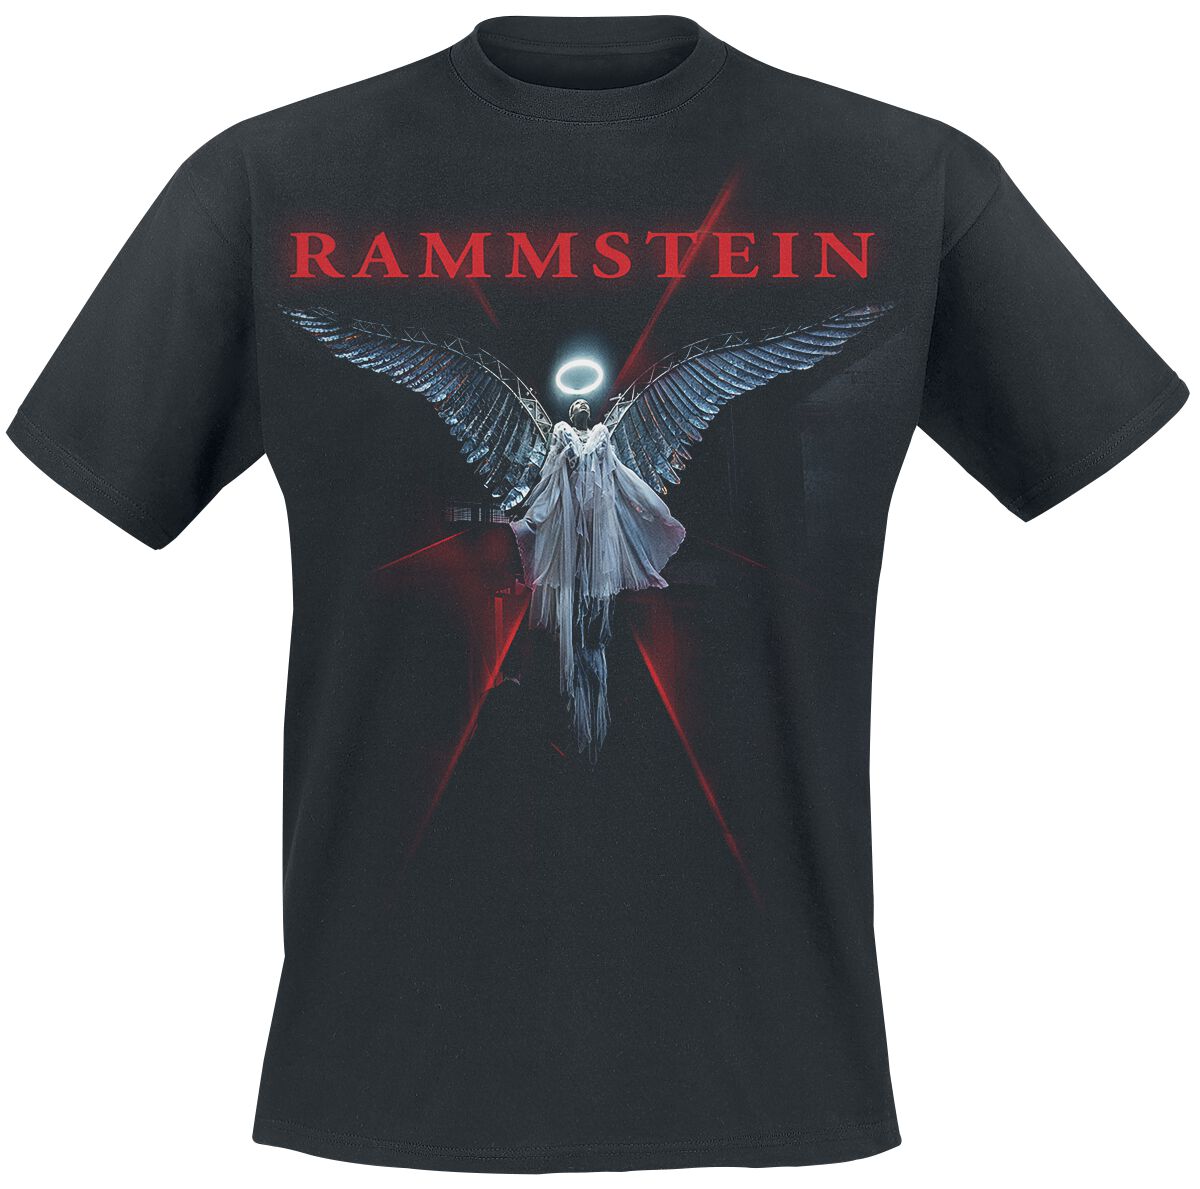 Rammstein T-Shirt - Du-Ich-Wir-Ihr - S bis 5XL - für Männer - Größe XXL - schwarz  - Lizenziertes Merchandise!